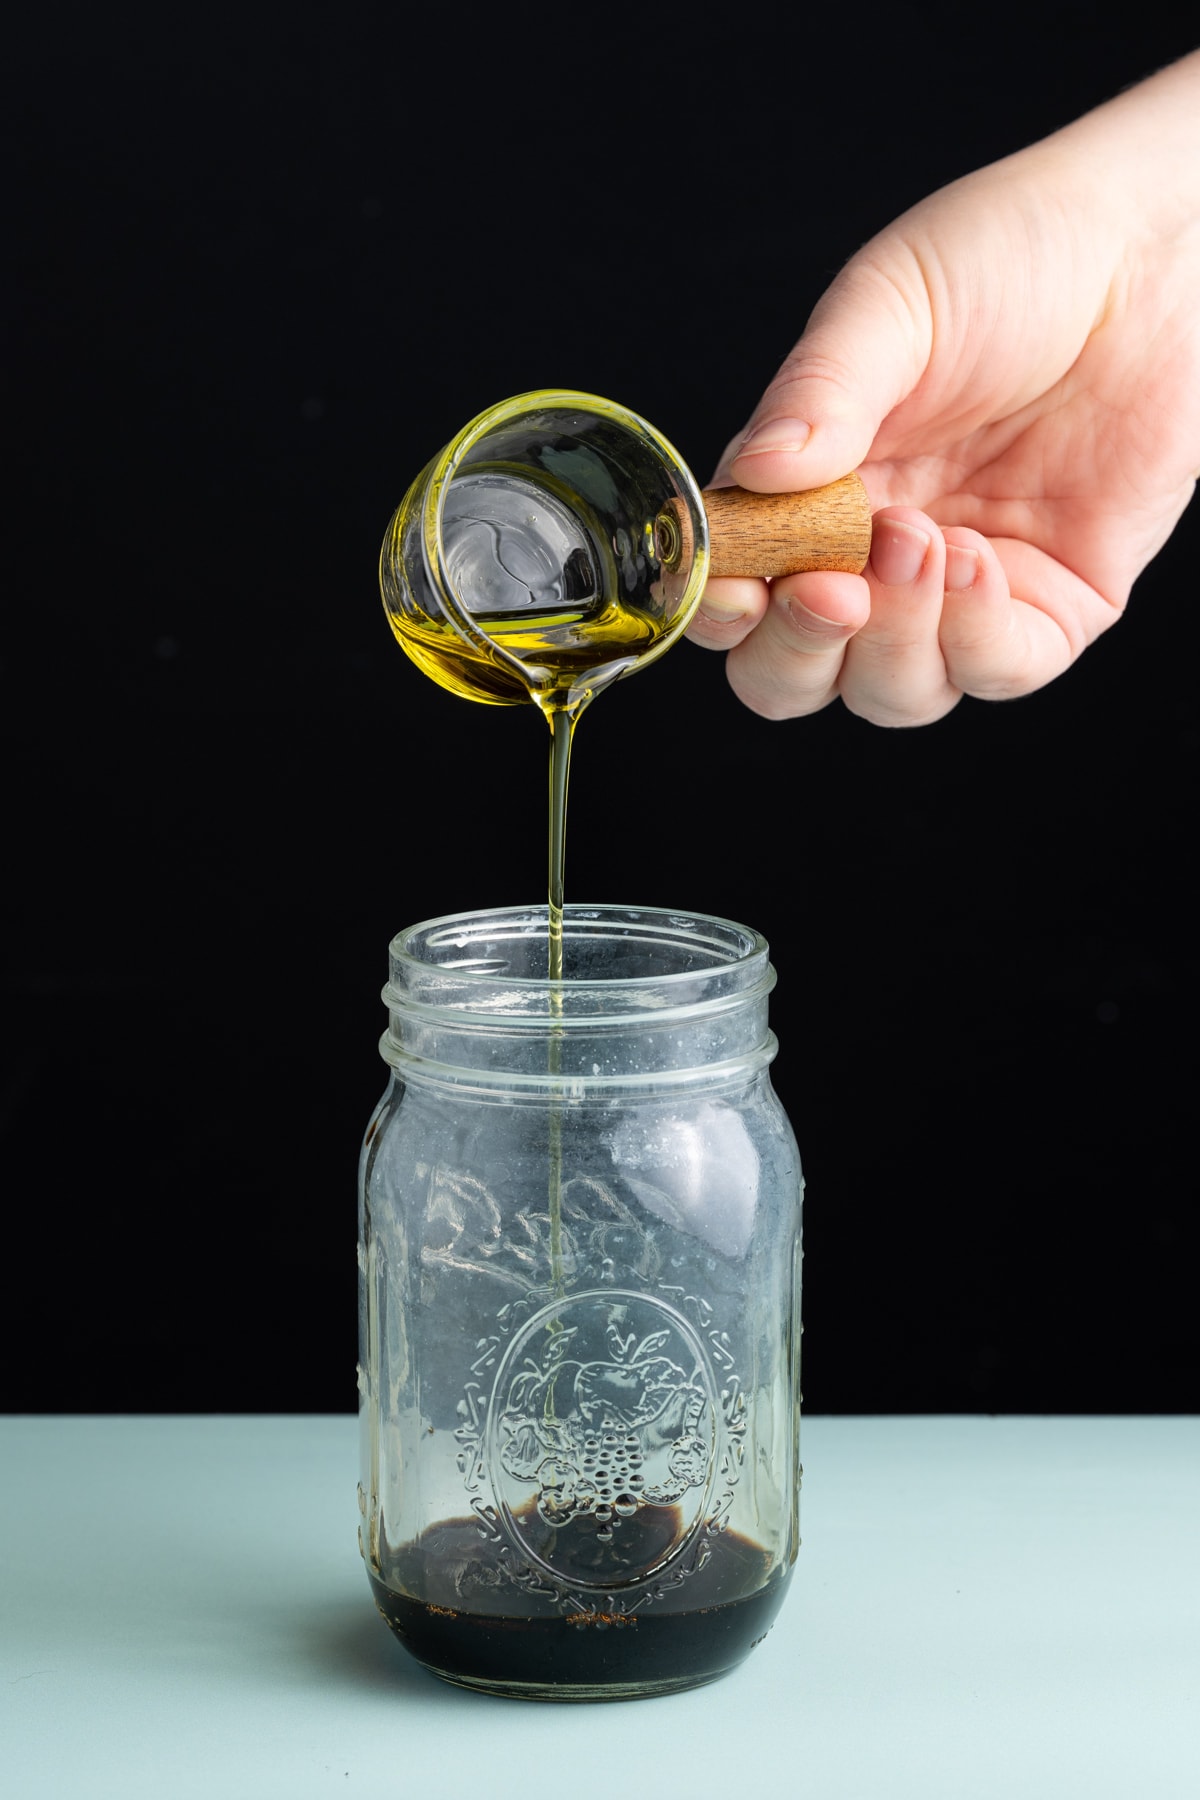 Emulsifying oil and vinegar together